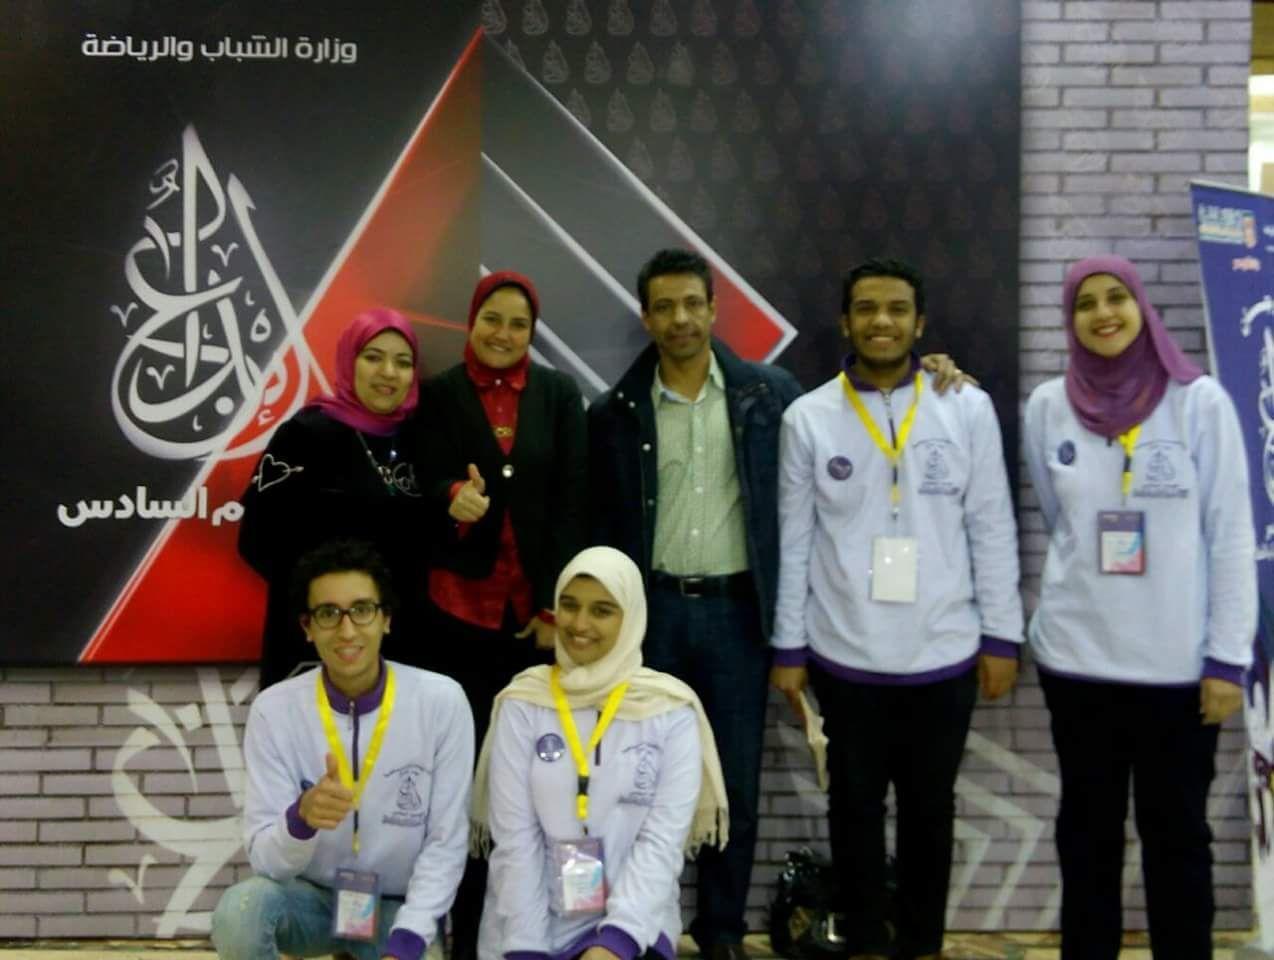 فوز فريق طلاب جامعة القاهرة بالمركز الأول (1)                                                                                                                                                           